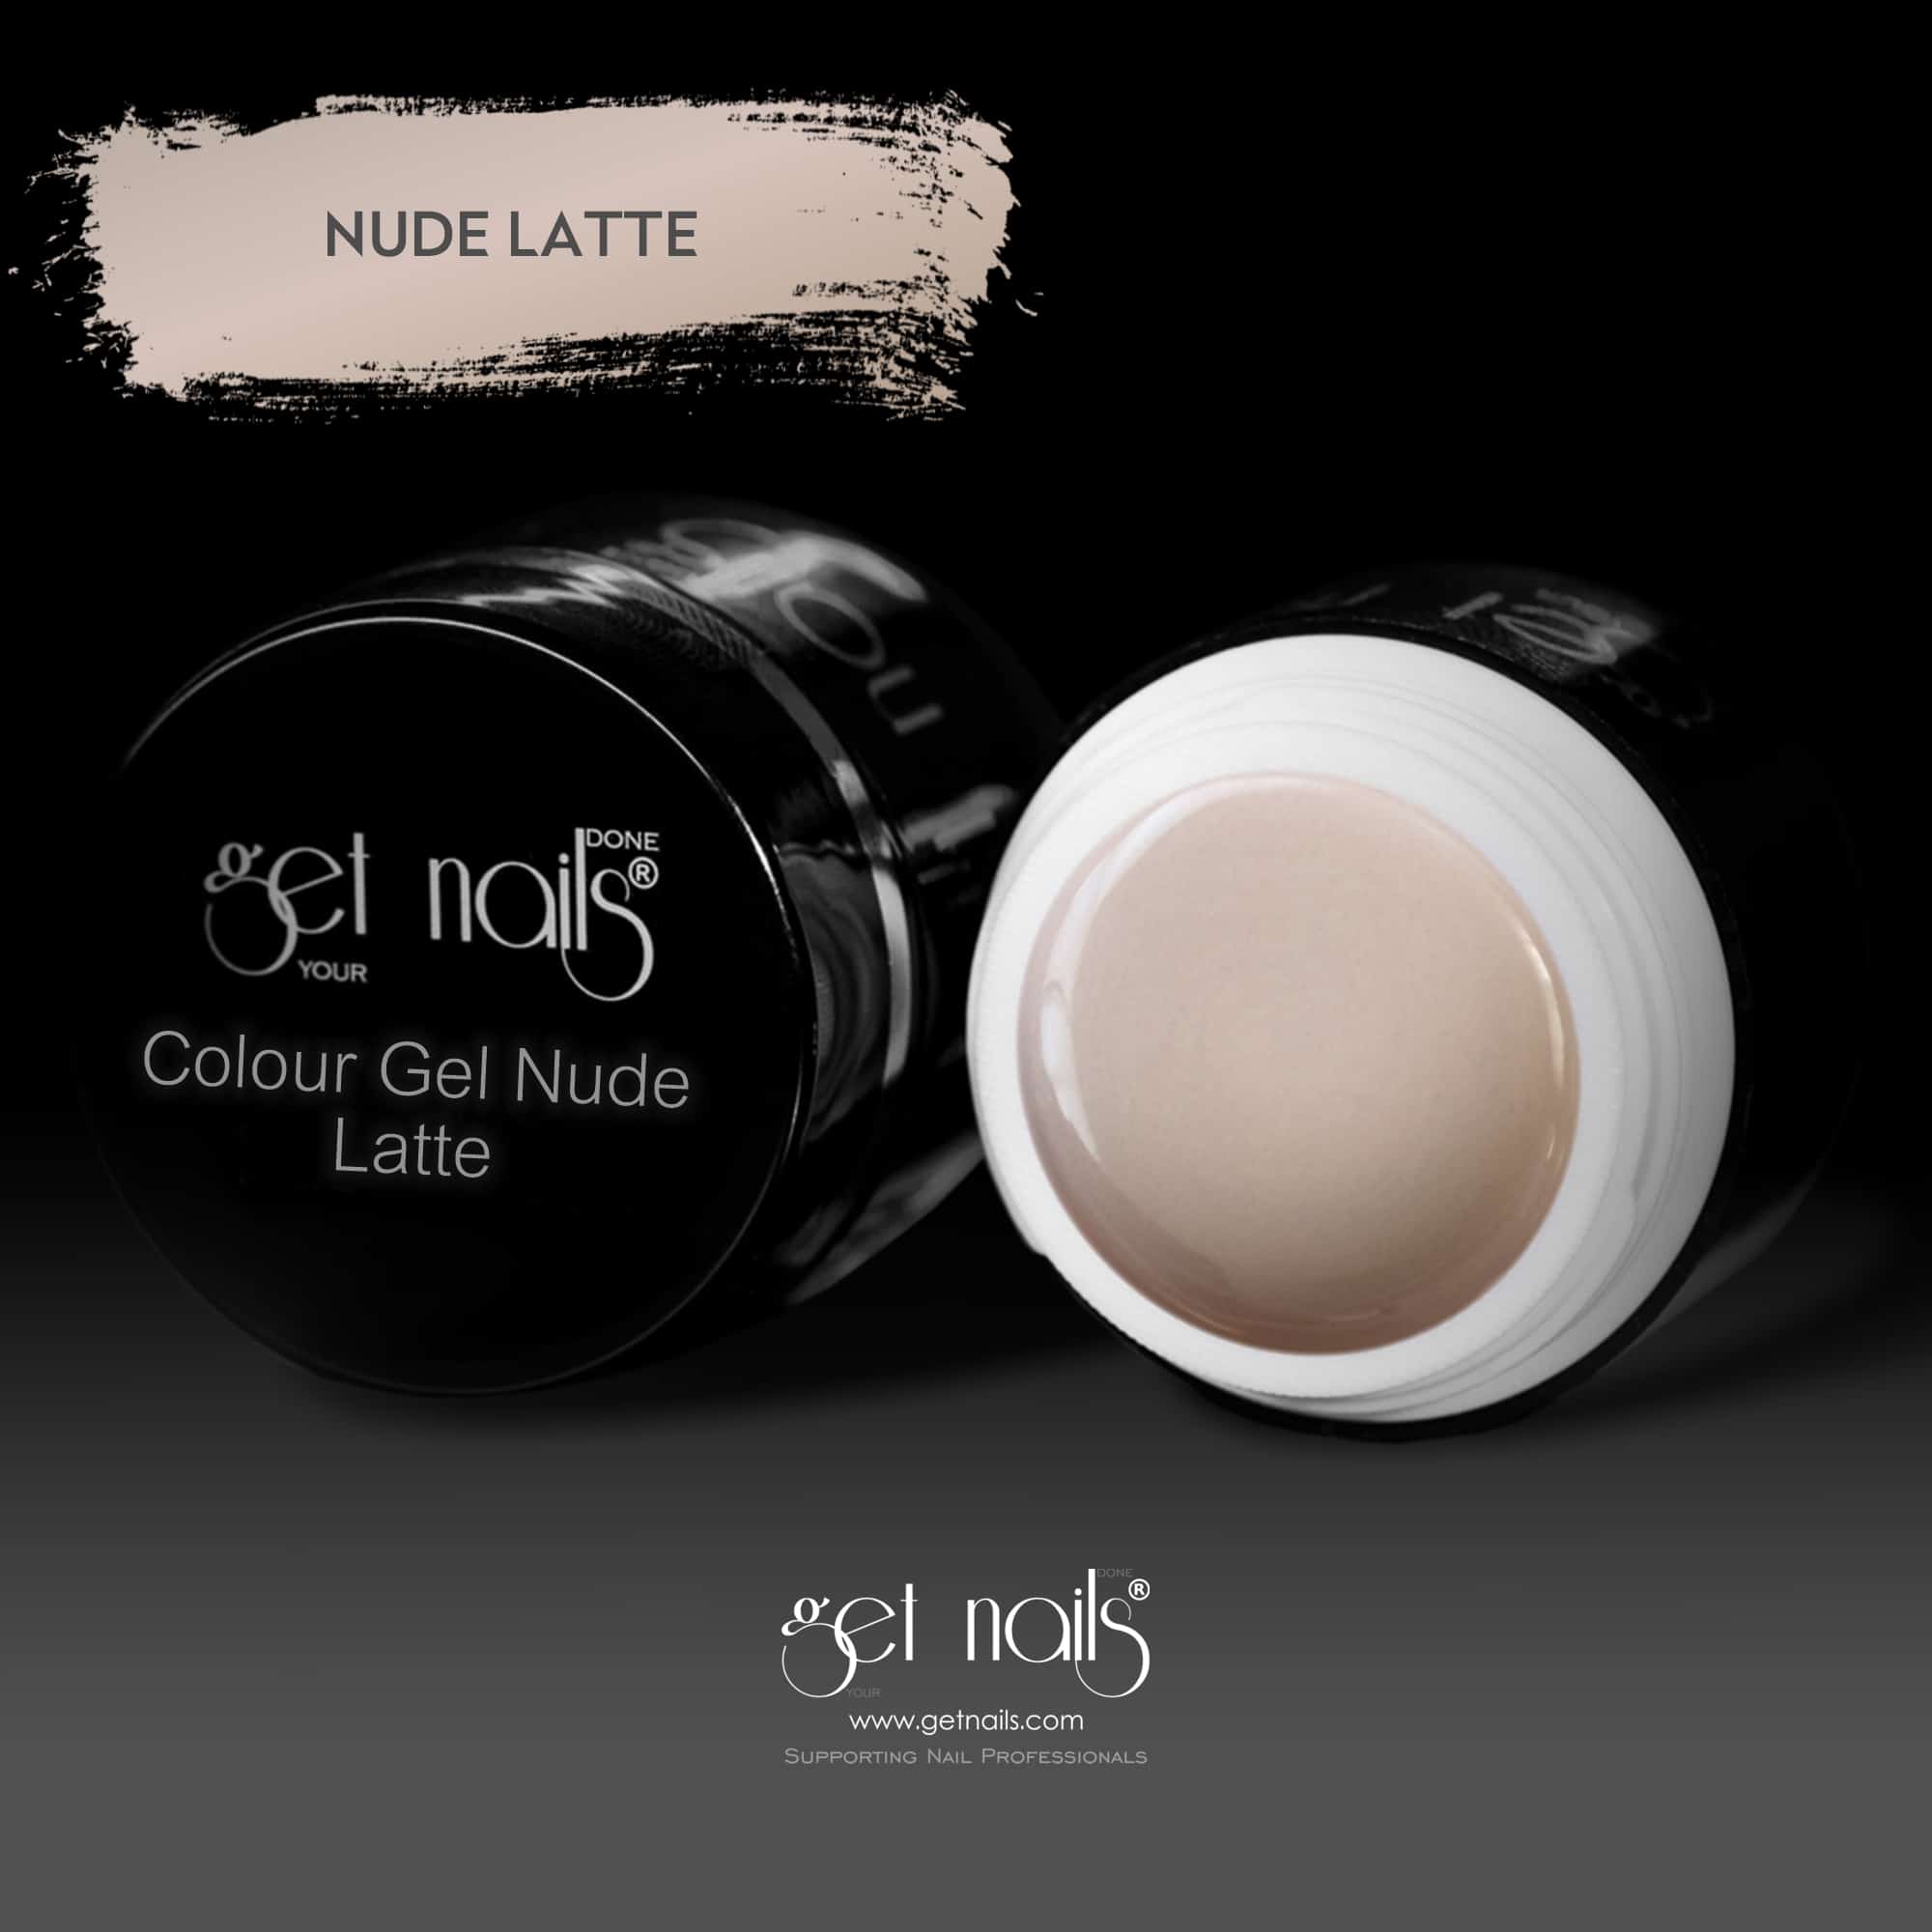 Get Nails Austria - Colour Gel Nude Latte 5g